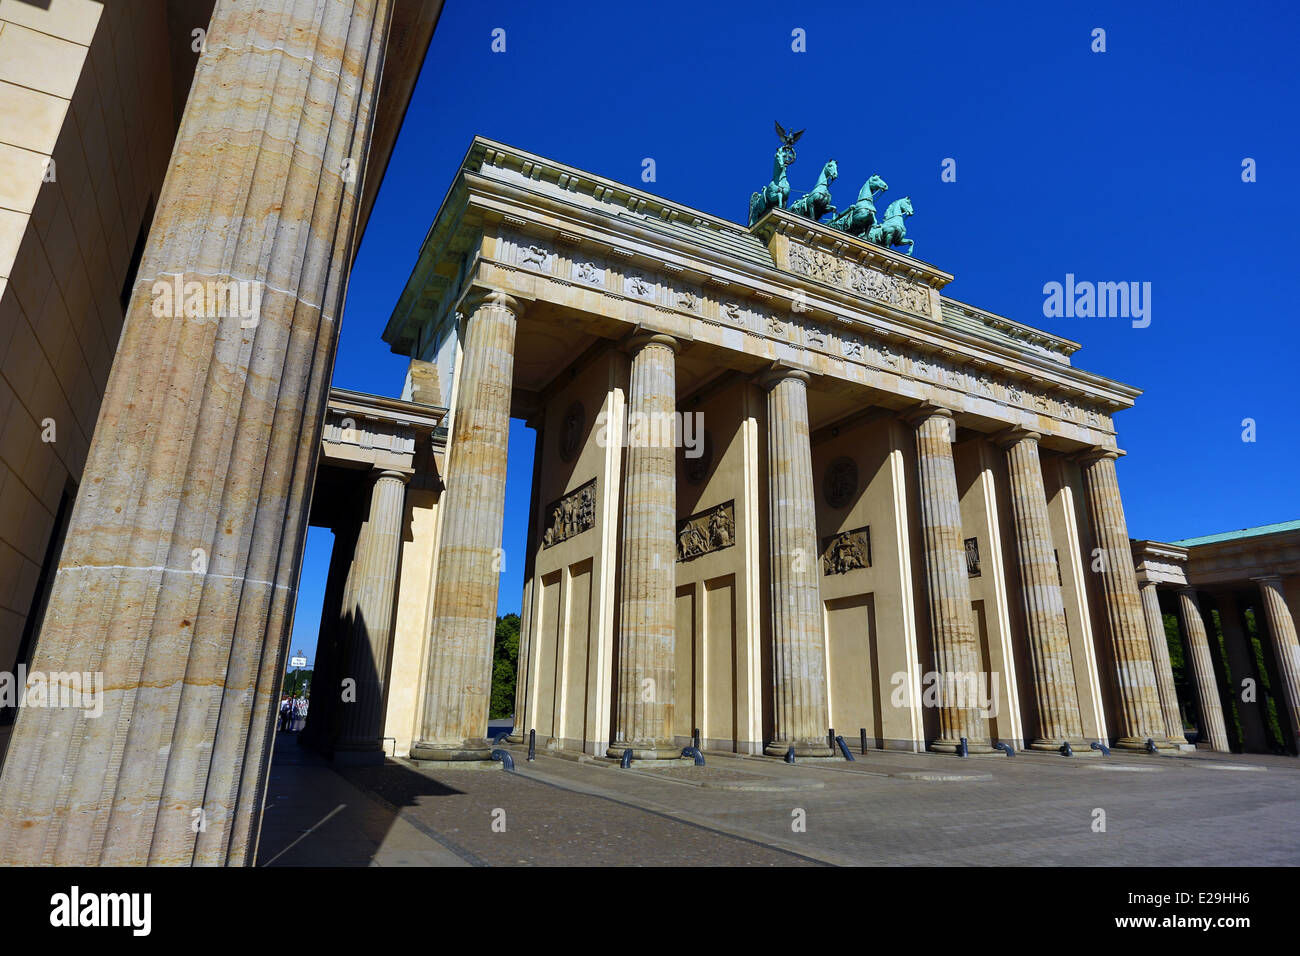 La Porta di Brandeburgo, Brandenburger Tor, neoclassico arco trionfale a Berlino, Germania Foto Stock